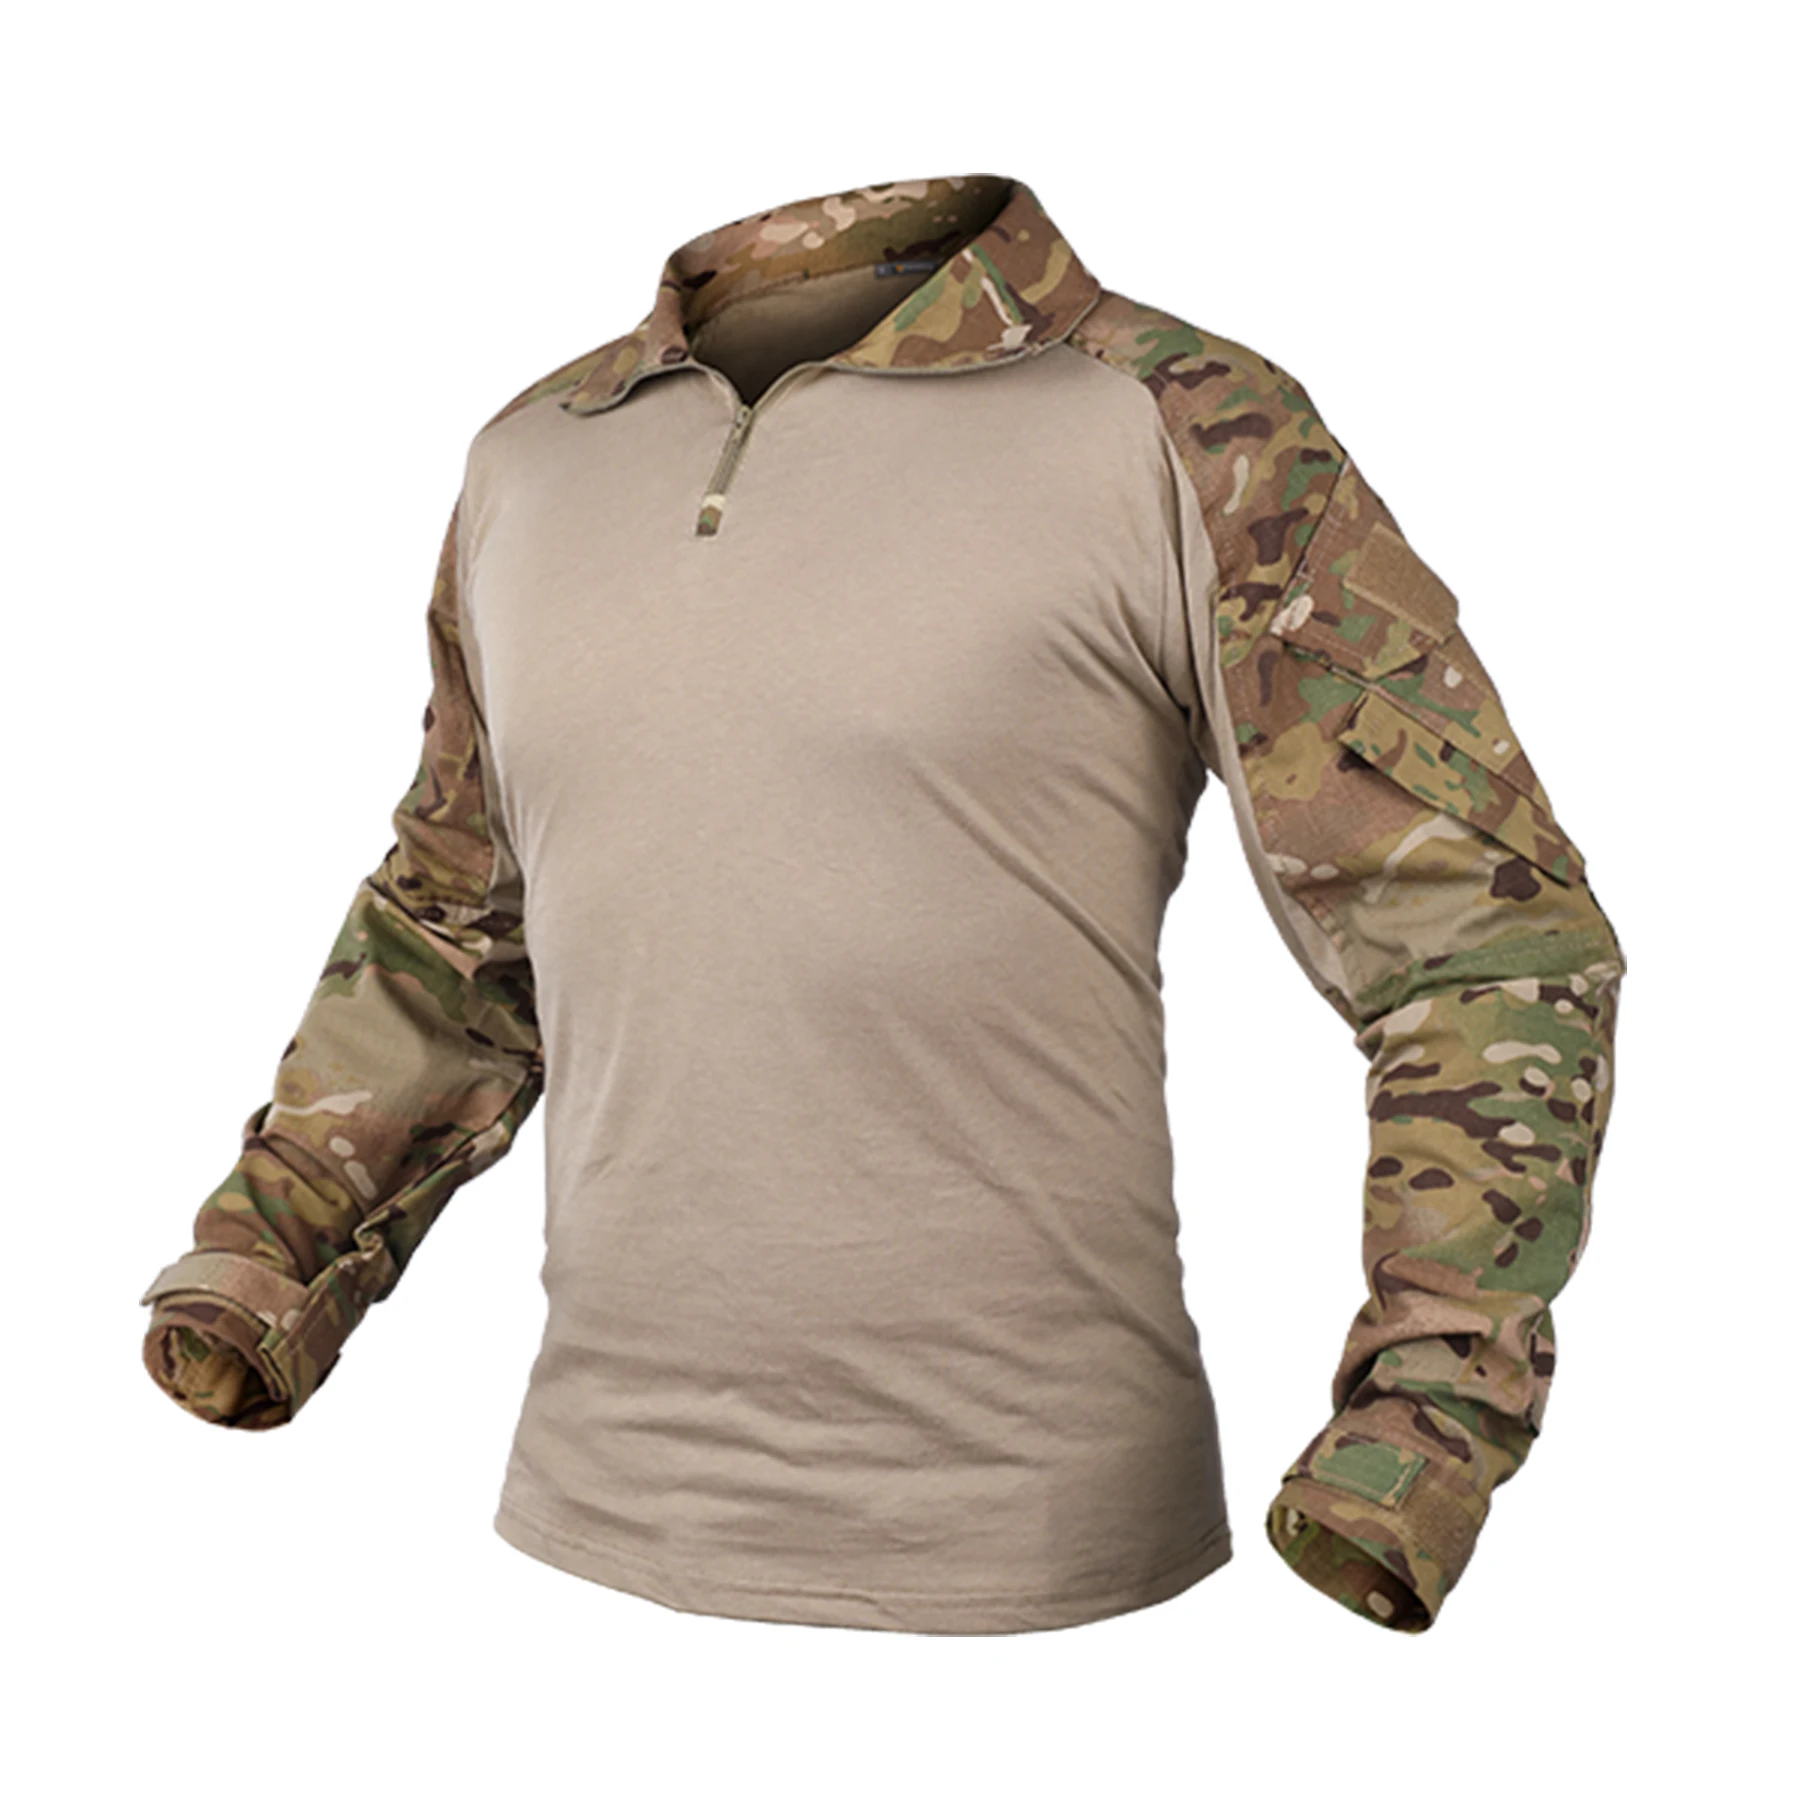 

IDOGEAR Men Rapid Assault Tactical Top Long Sleeve Shirt Combat Clothing G3 Combat Shirts Camo Shirt with Elbow Pads